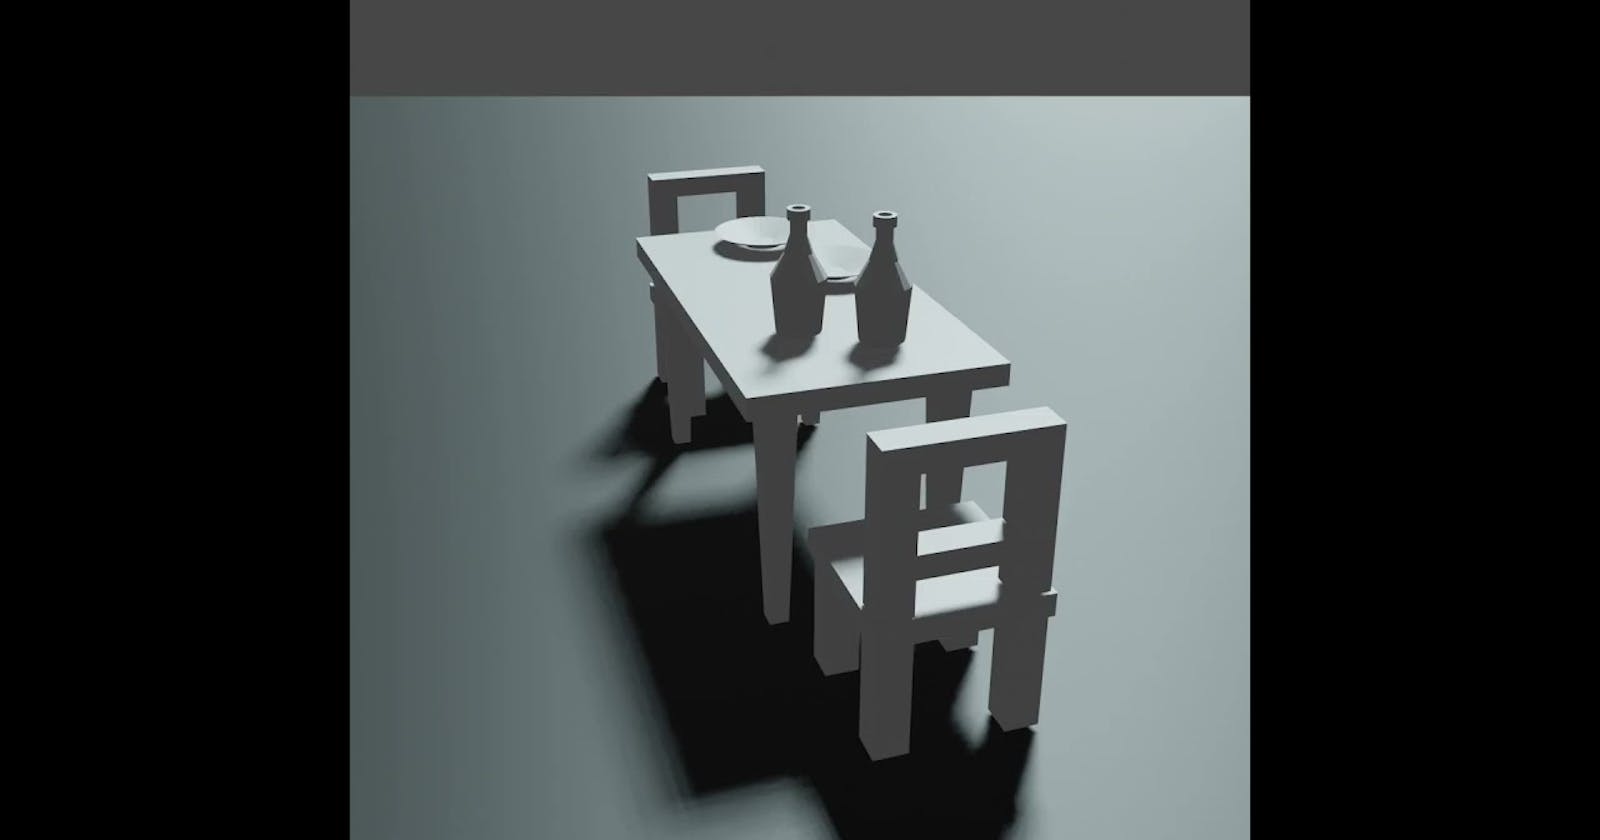 Blender 3D Progress #13 - Table, Chairs, Plates & Bottles